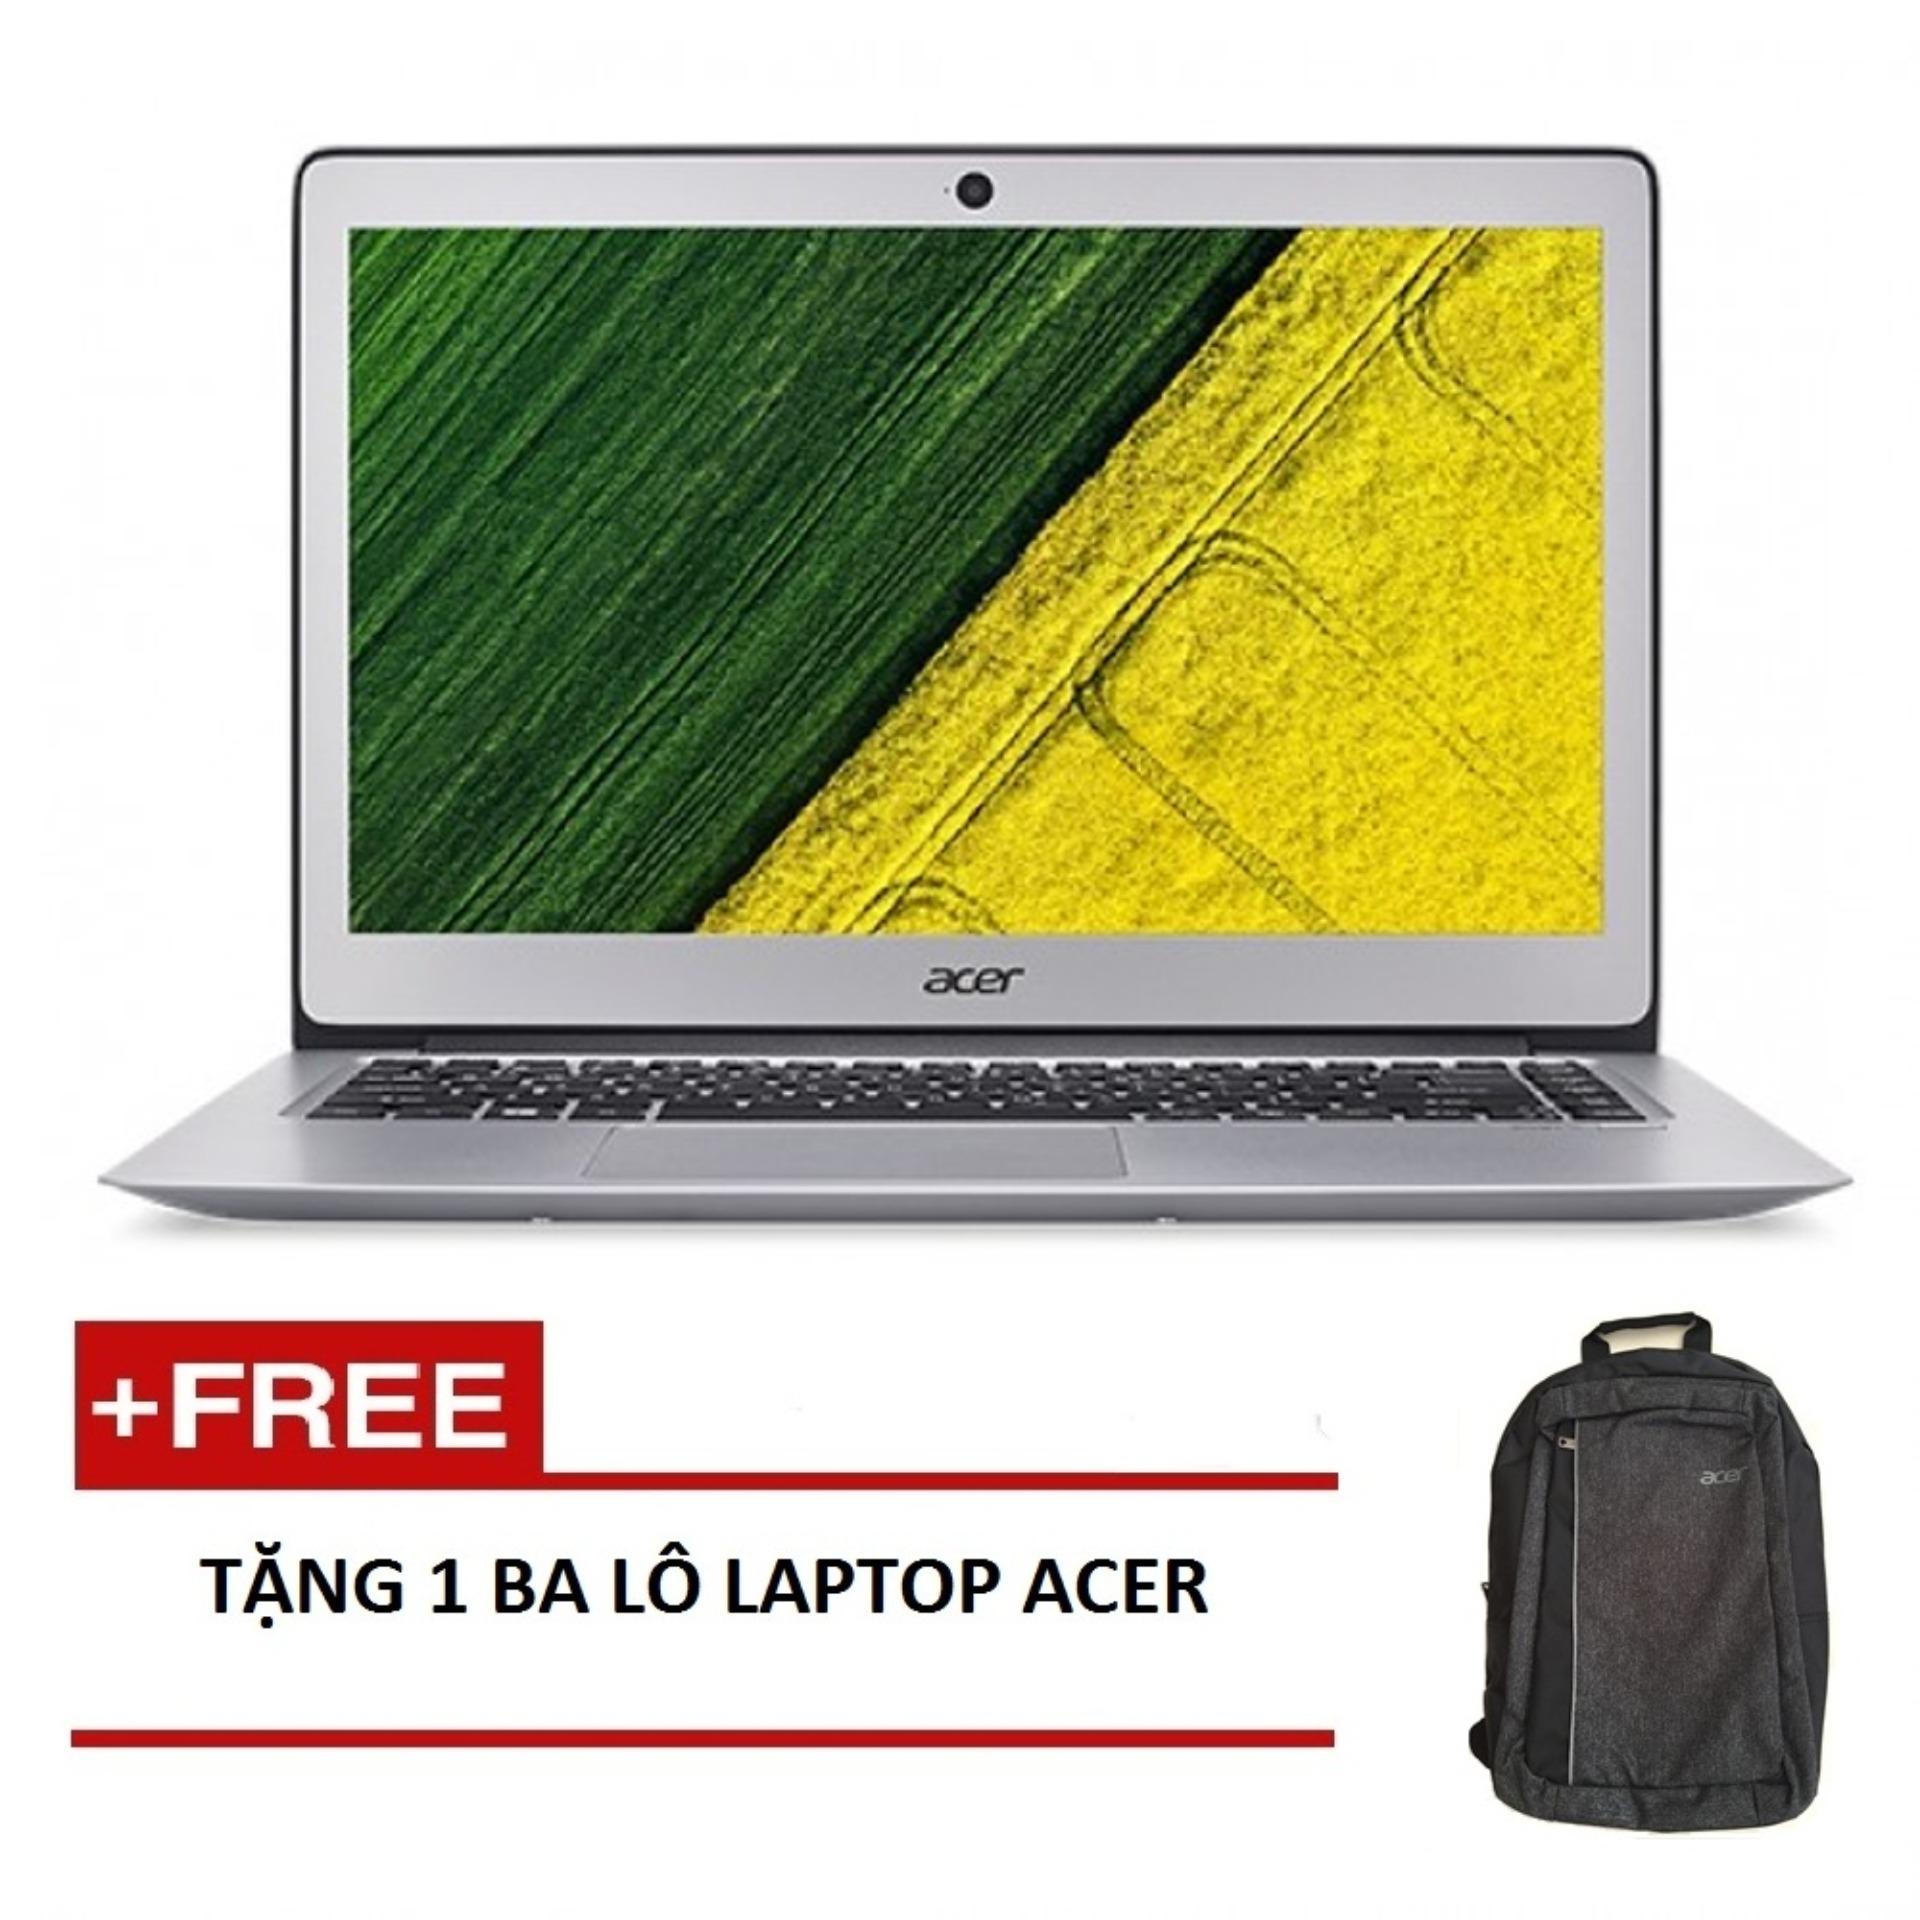 Laptop Acer Aspire SF314-52-39CV NX.GNUSV.007 i3-7130U/4G/256GSSD/W10SL/14FHD (Bạc) + Tặng 1balo laptop ACER - Hãng phân phối chính thức